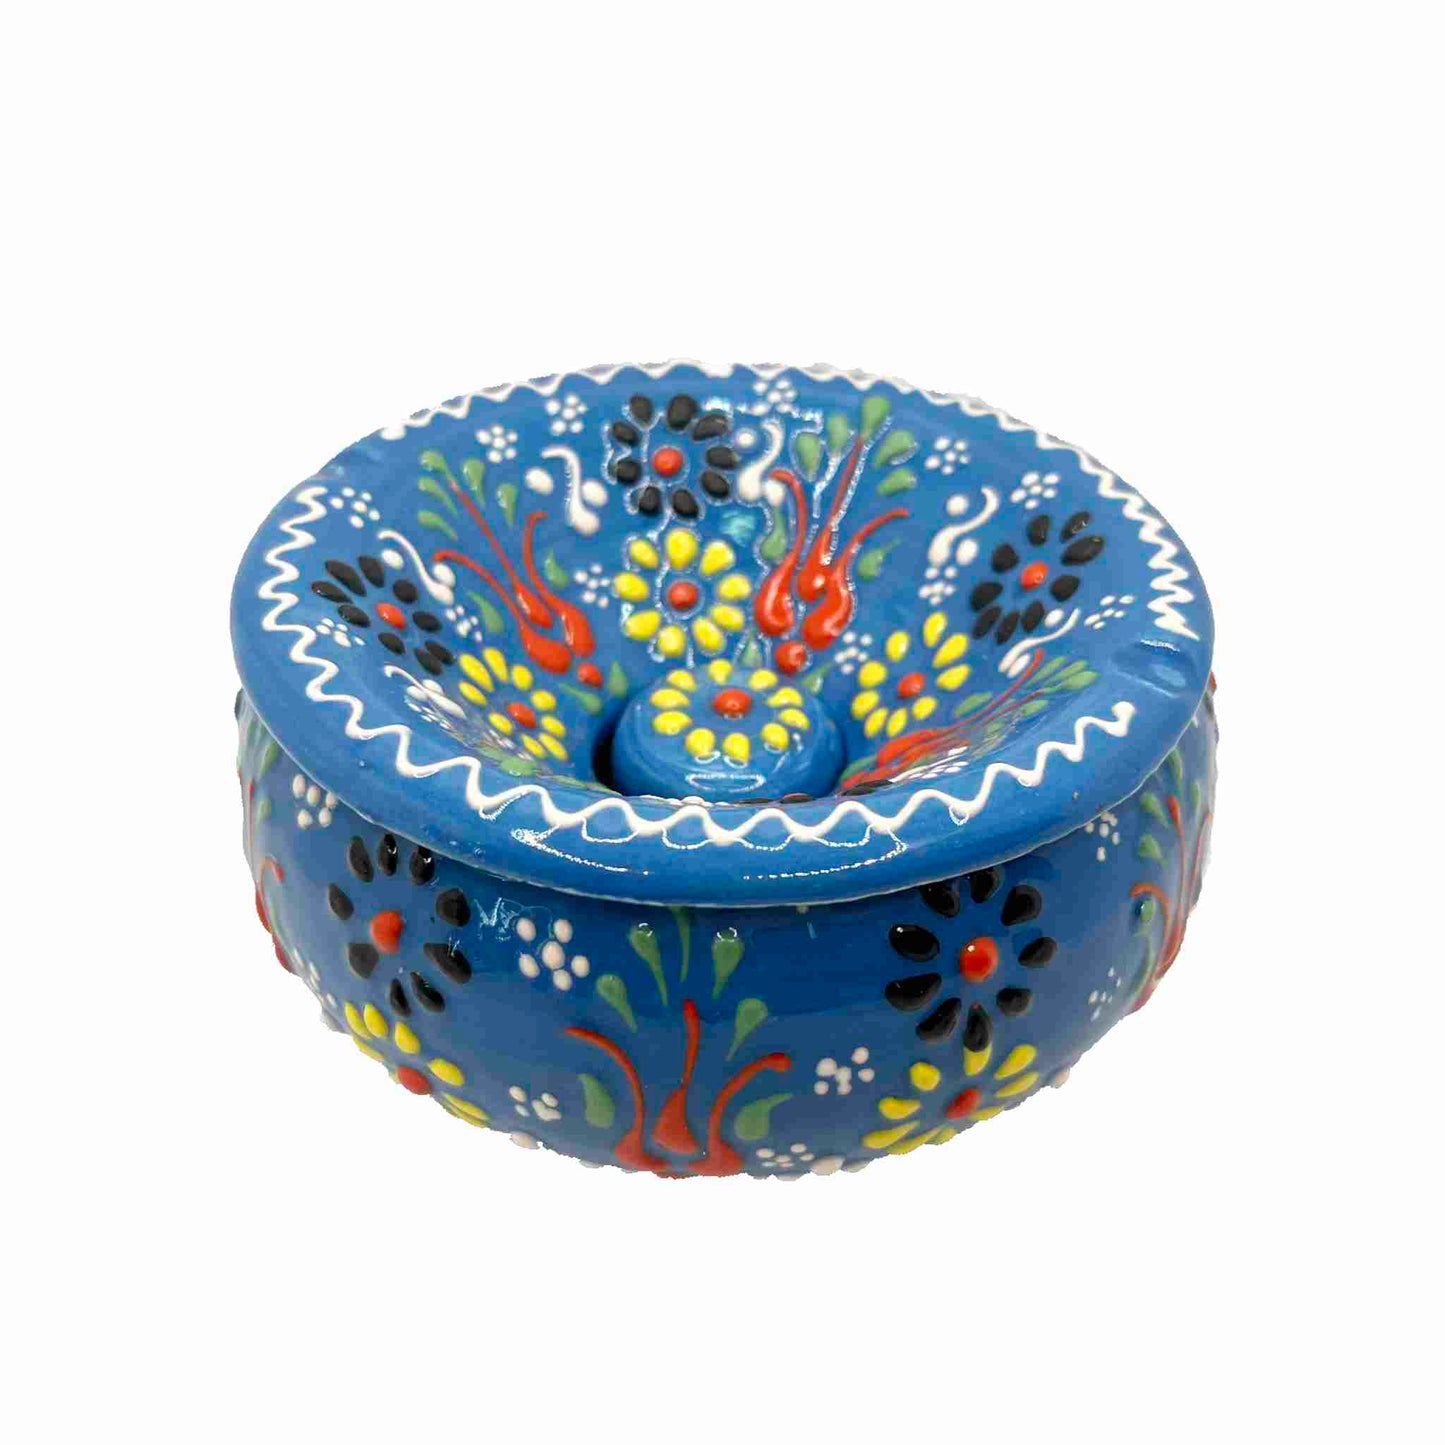 Cenicero de cerámica turca artesanal, con tapa Lace, azul claro.